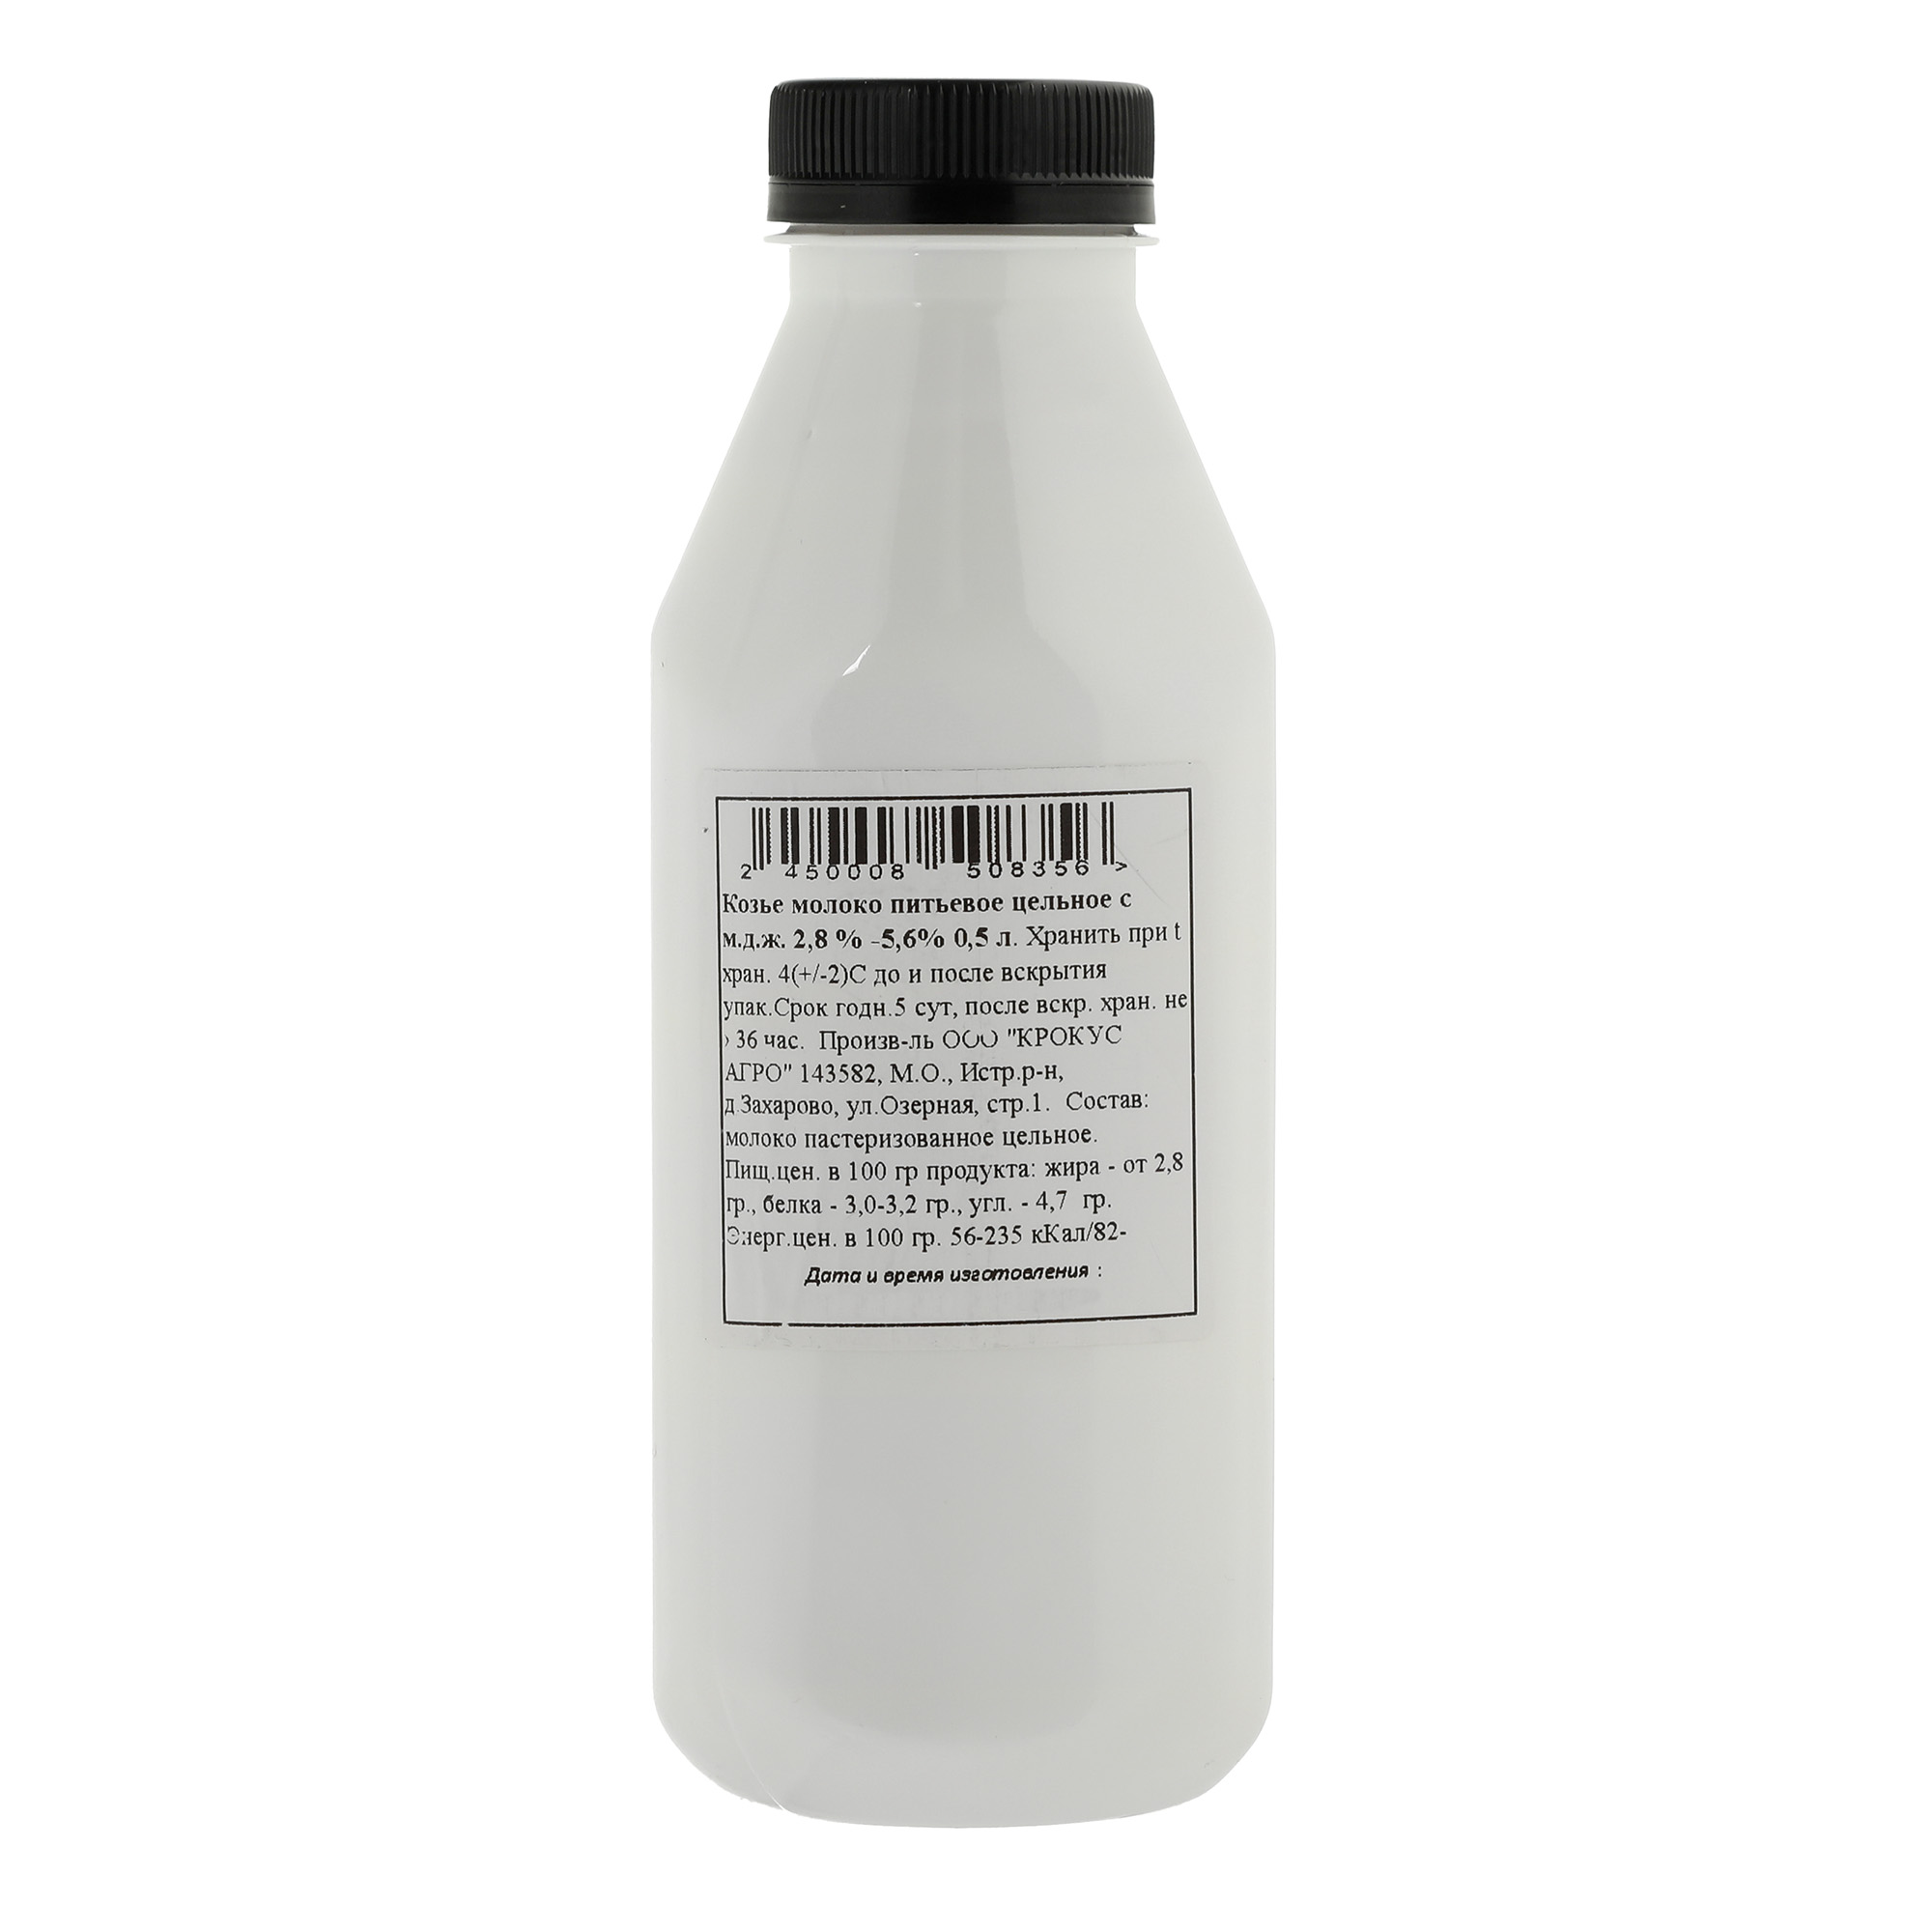 Козье молоко Крокус агро питьевое цельное 2.8%-5.6%, 500 мл